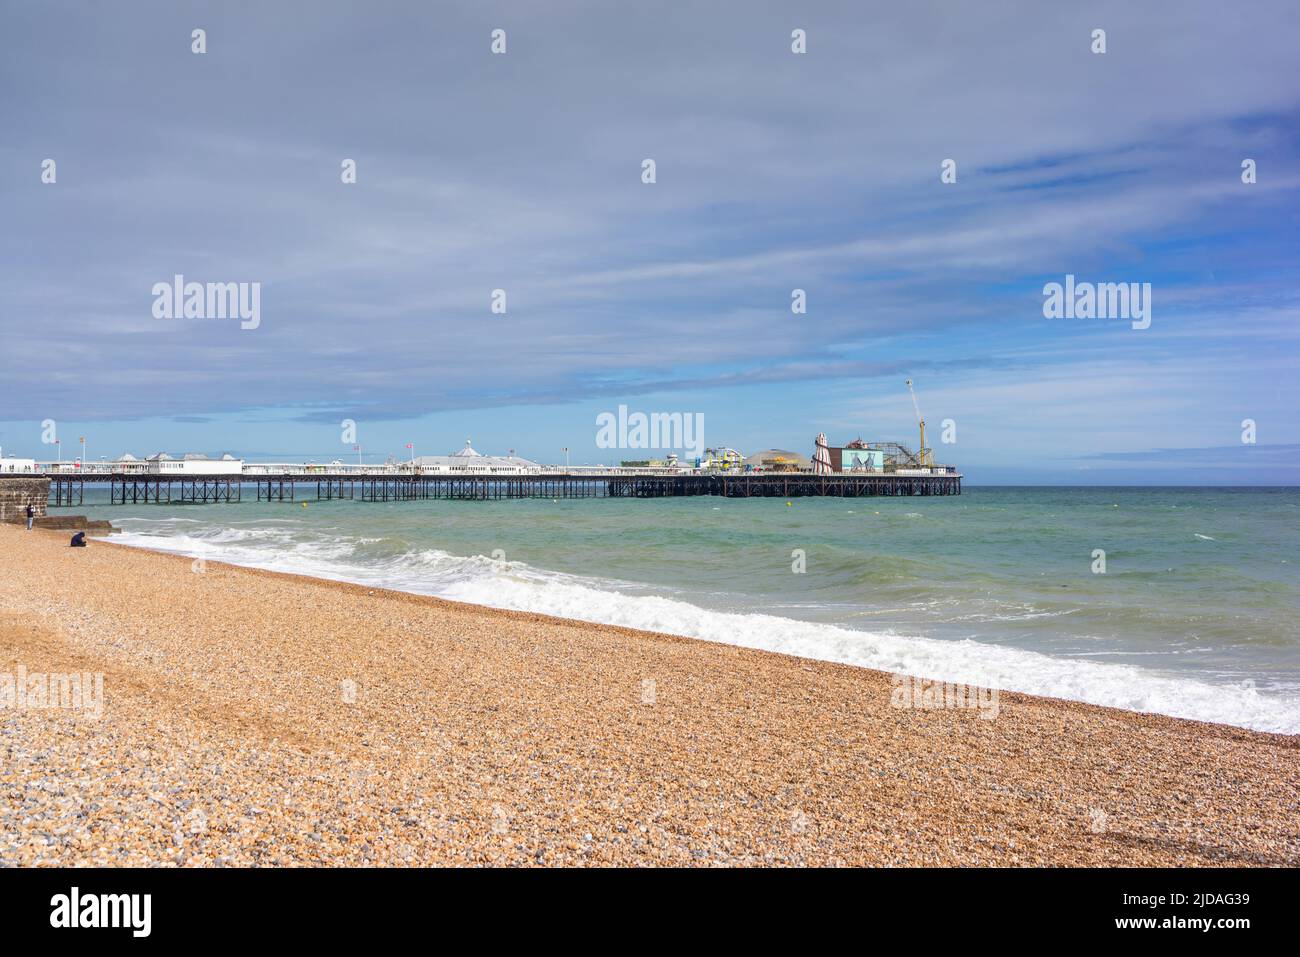 Brighton Palace Pier, molo di piacere classificato di grado II* sul lungomare di Brighton, famoso punto di riferimento di Brighton, East Sussex, Inghilterra, Regno Unito Foto Stock